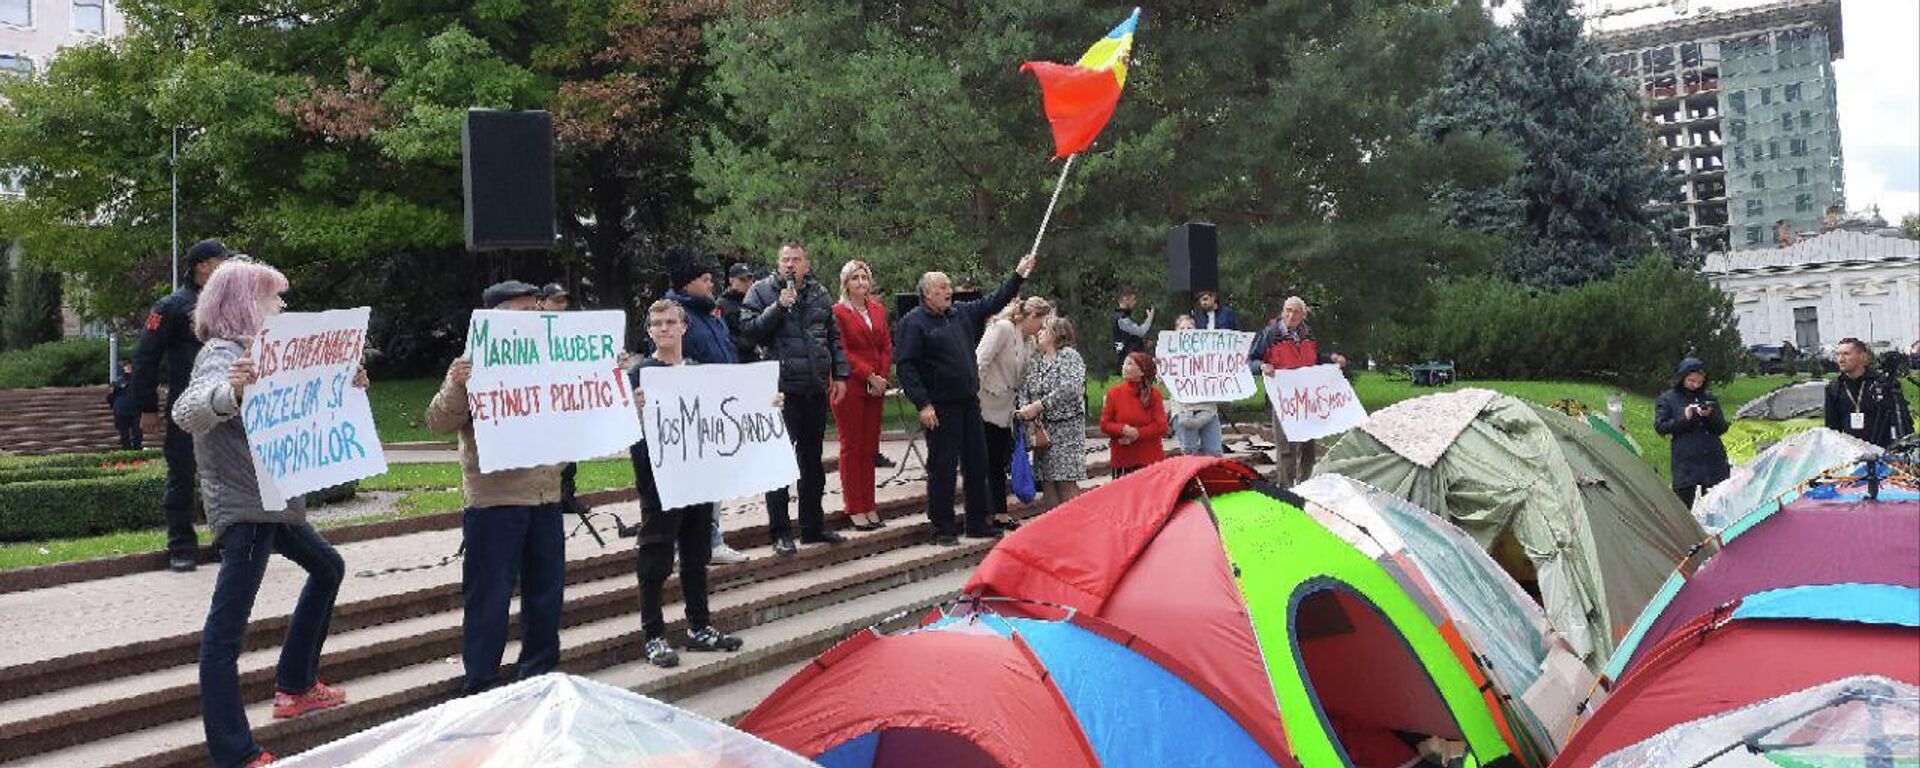 Протест в палаточном городке в Кишиневе 20.09.2022 - Sputnik Молдова, 1920, 20.09.2022